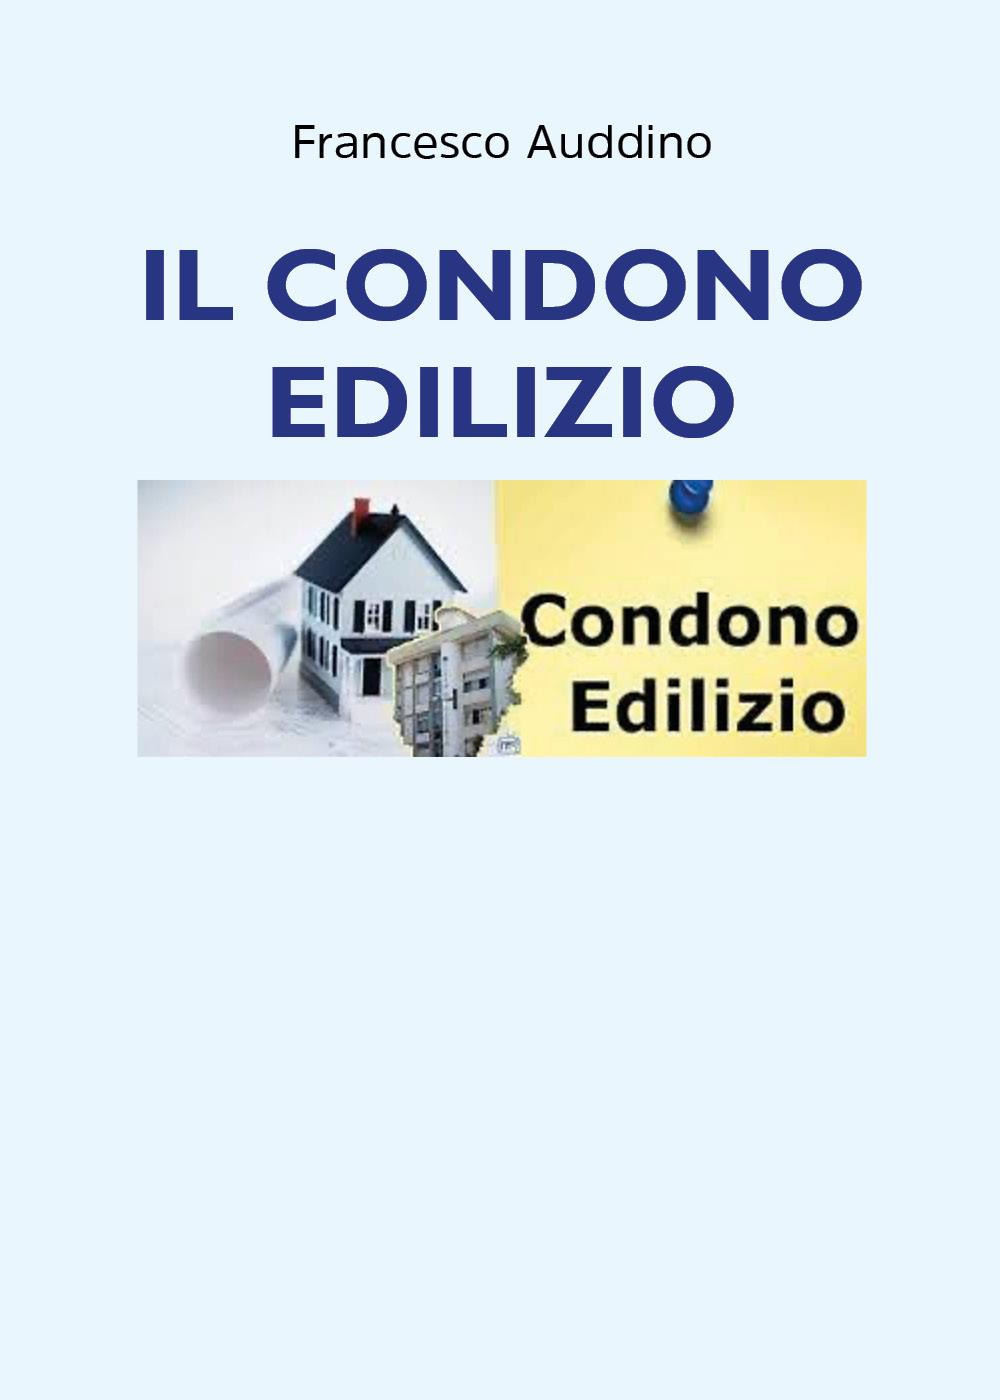 Libri Auddino Francesco - Il Condono Edilizio NUOVO SIGILLATO, EDIZIONE DEL 04/05/2022 SUBITO DISPONIBILE